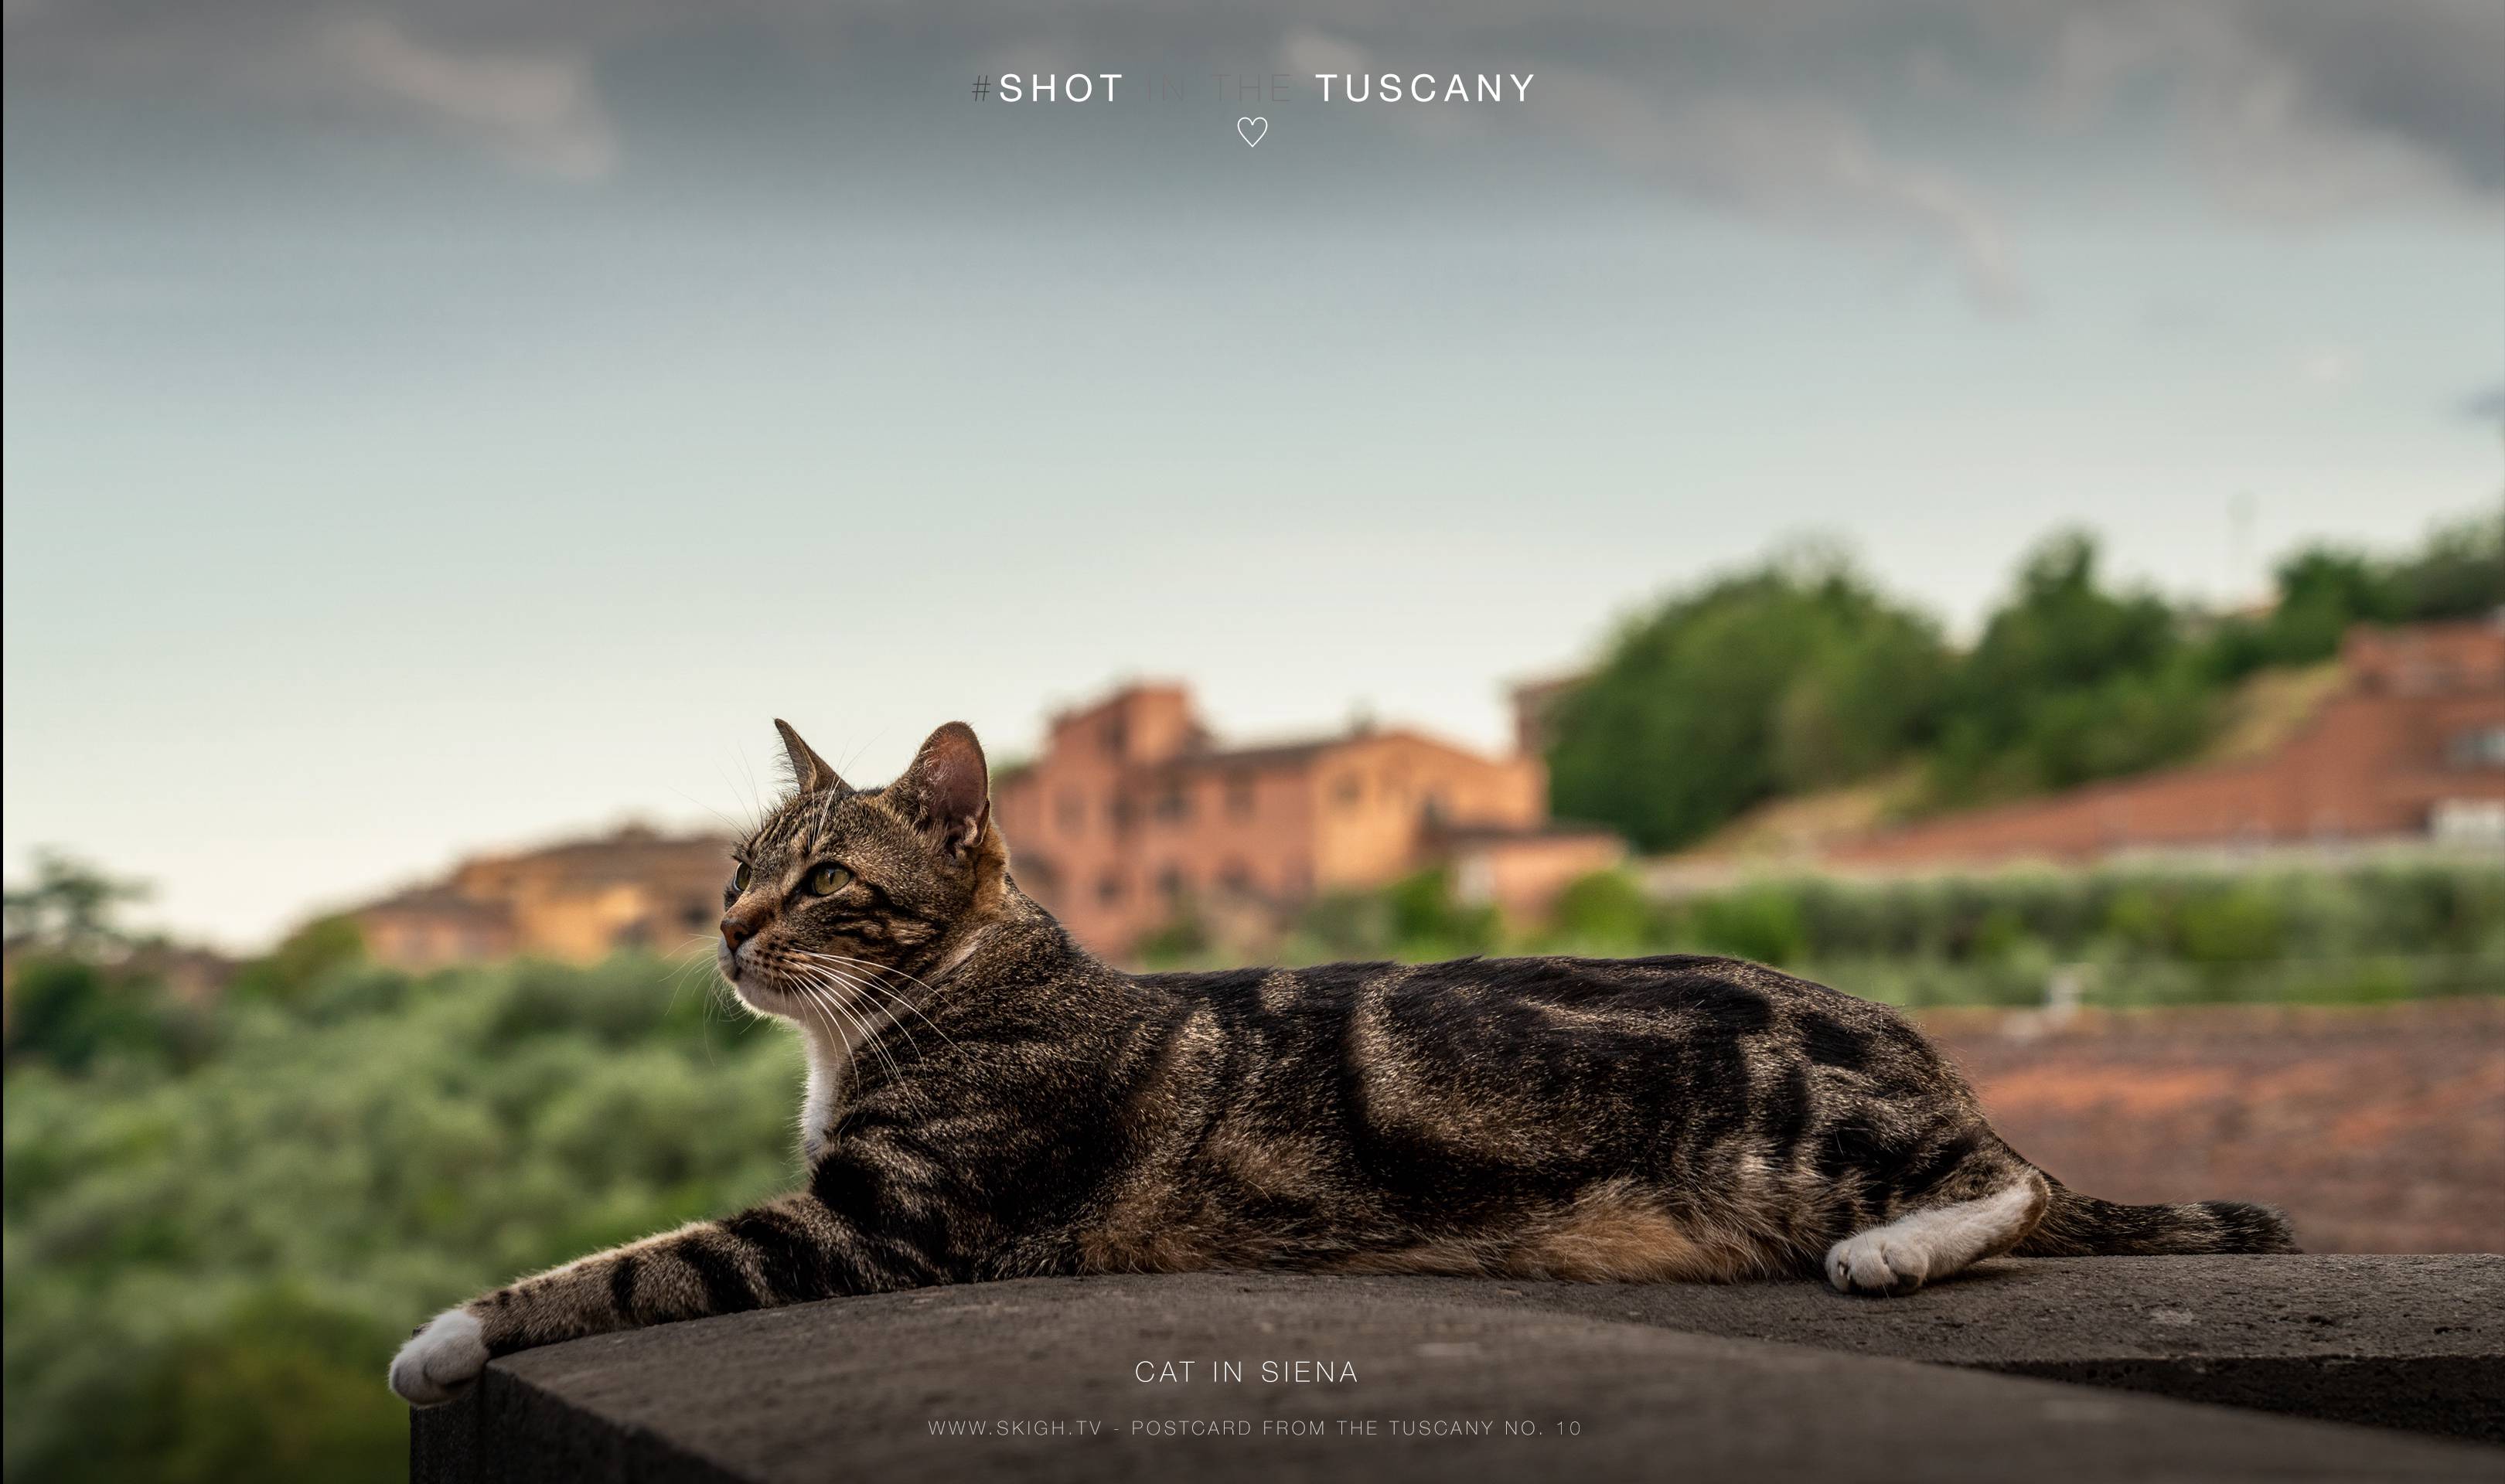 Cat in Siena